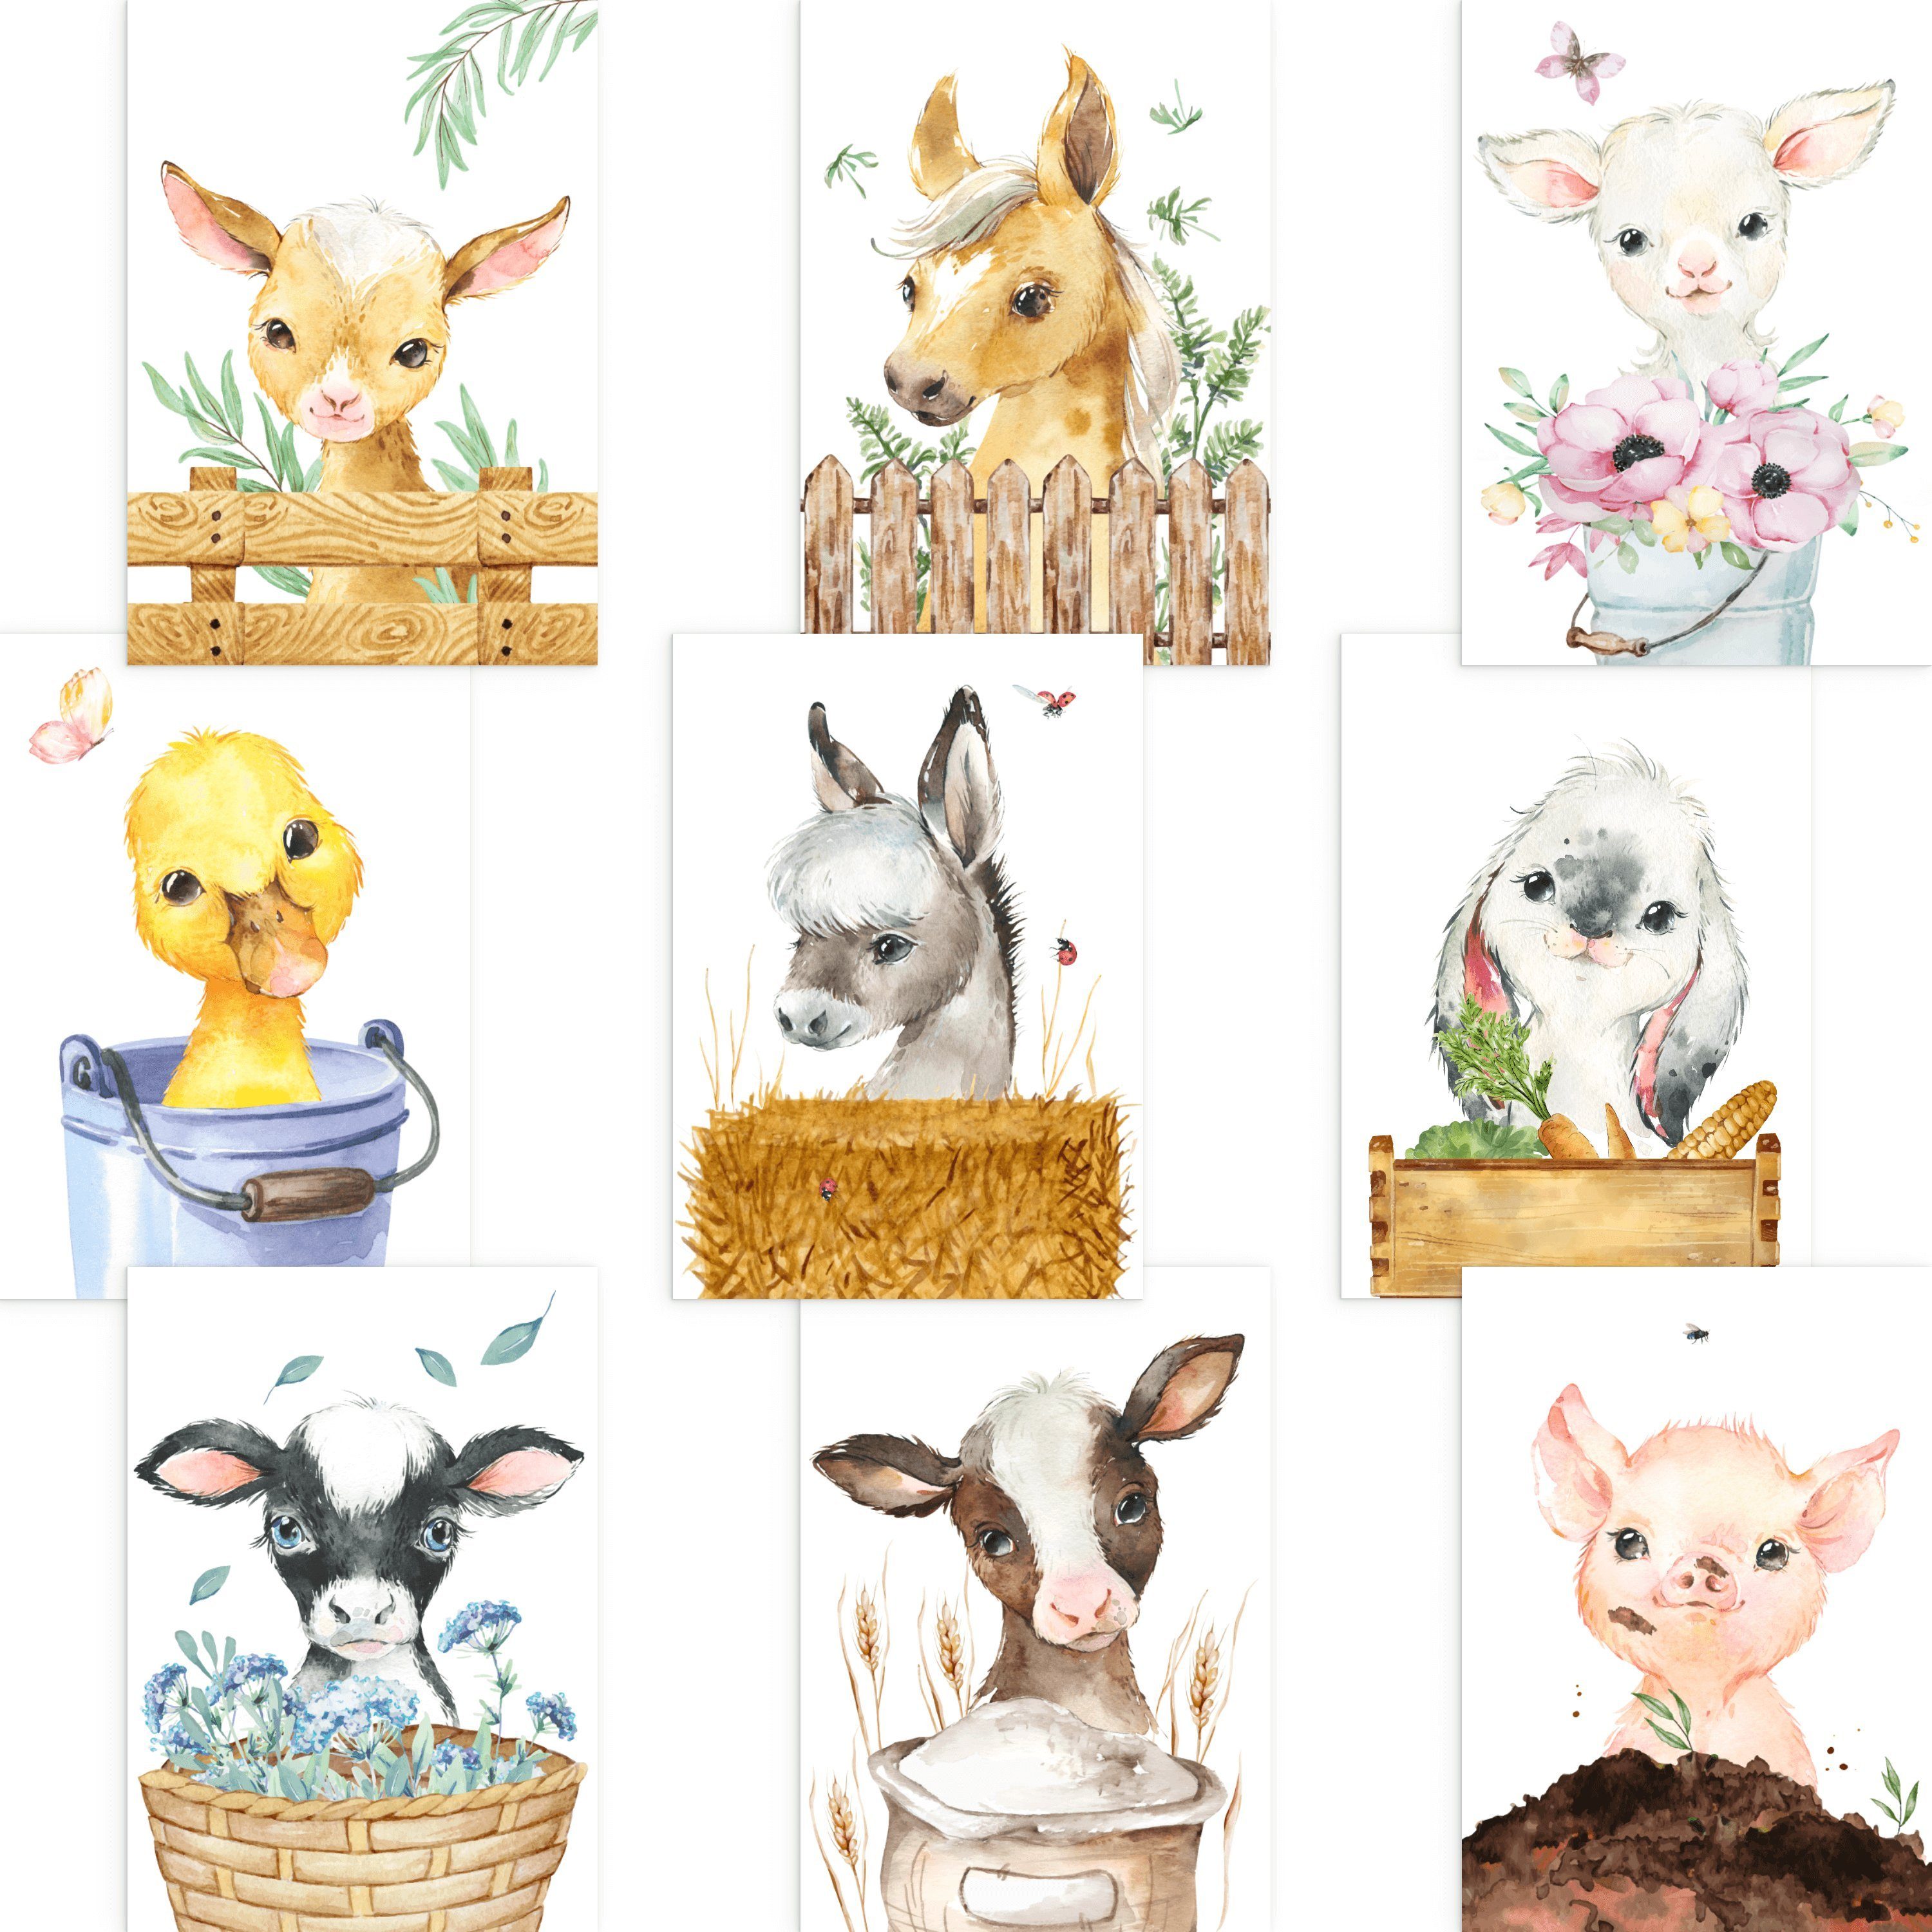 CreativeRobin Poster Schönes Kinderzimmer Tiere-Poster-Set, Farmtiere